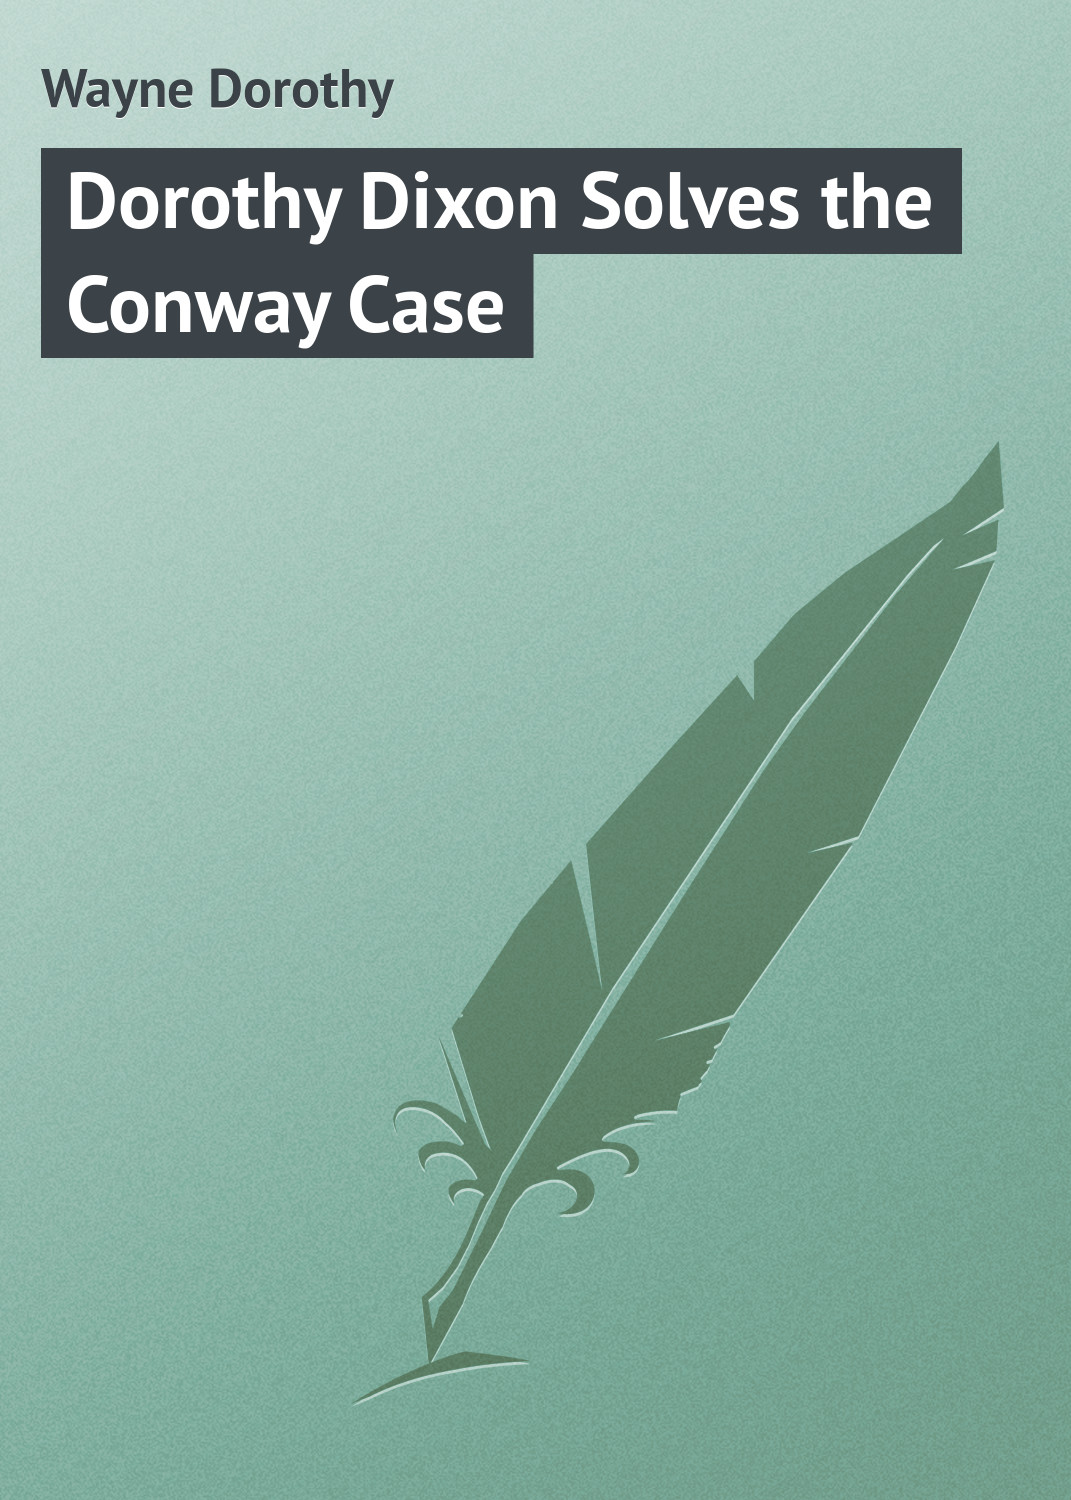 Книга Dorothy Dixon Solves the Conway Case из серии , созданная Dorothy Wayne, может относится к жанру Классические детективы, Зарубежные детективы, Зарубежная классика. Стоимость электронной книги Dorothy Dixon Solves the Conway Case с идентификатором 23145235 составляет 5.99 руб.